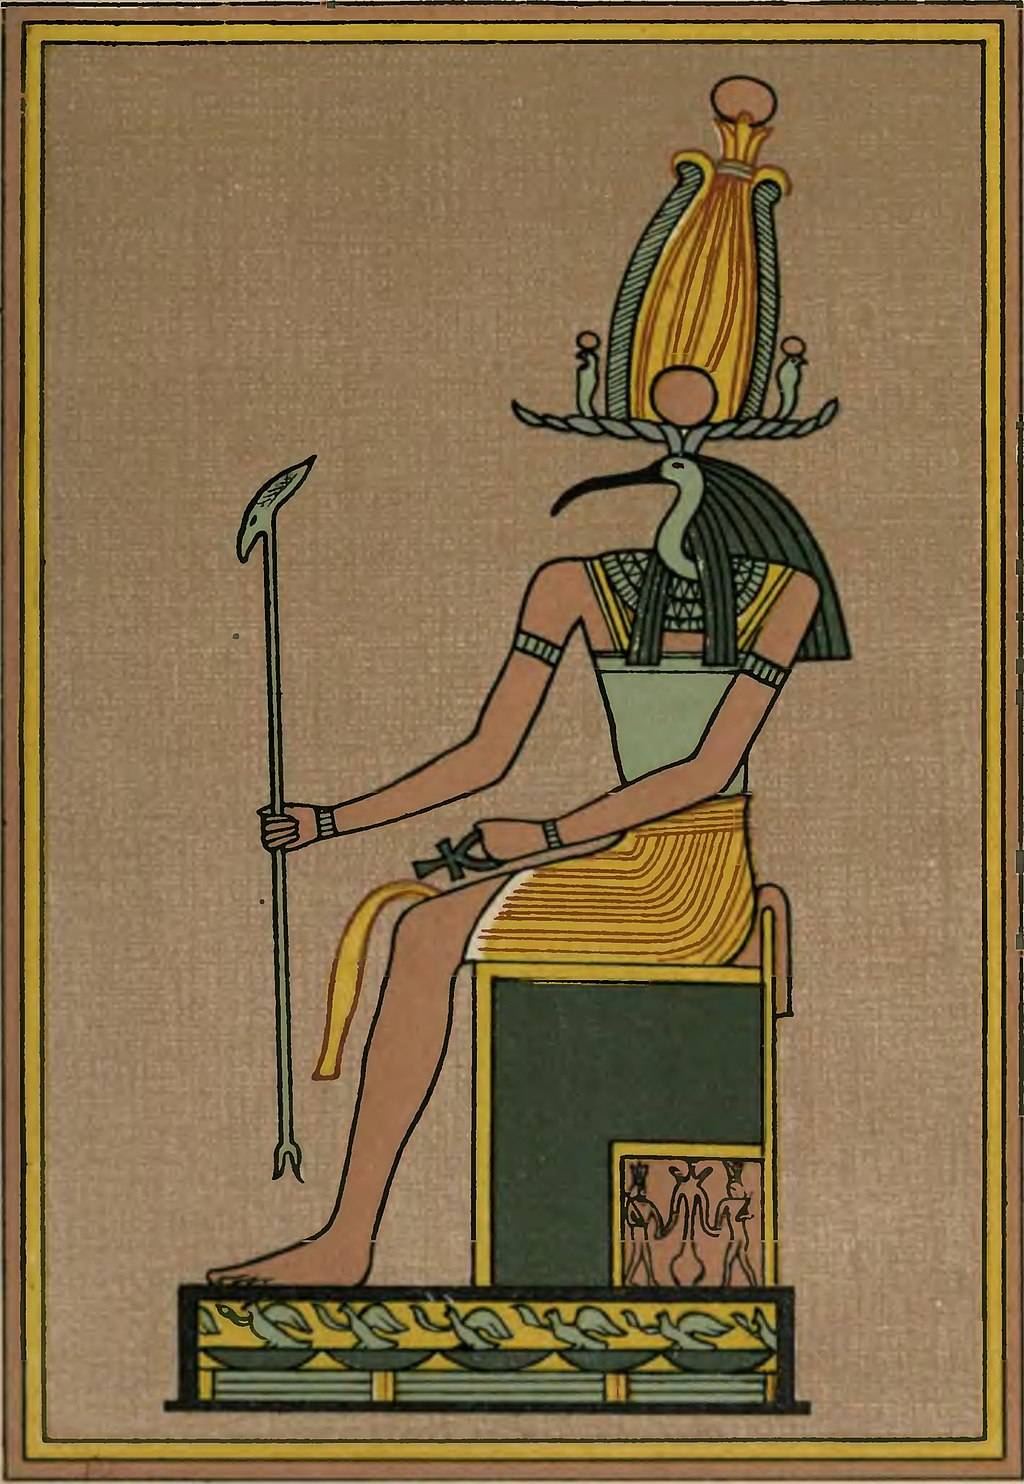 Thoth was de god van de maan, de magie, de kalender, de schrijfkunst en de wijsheid